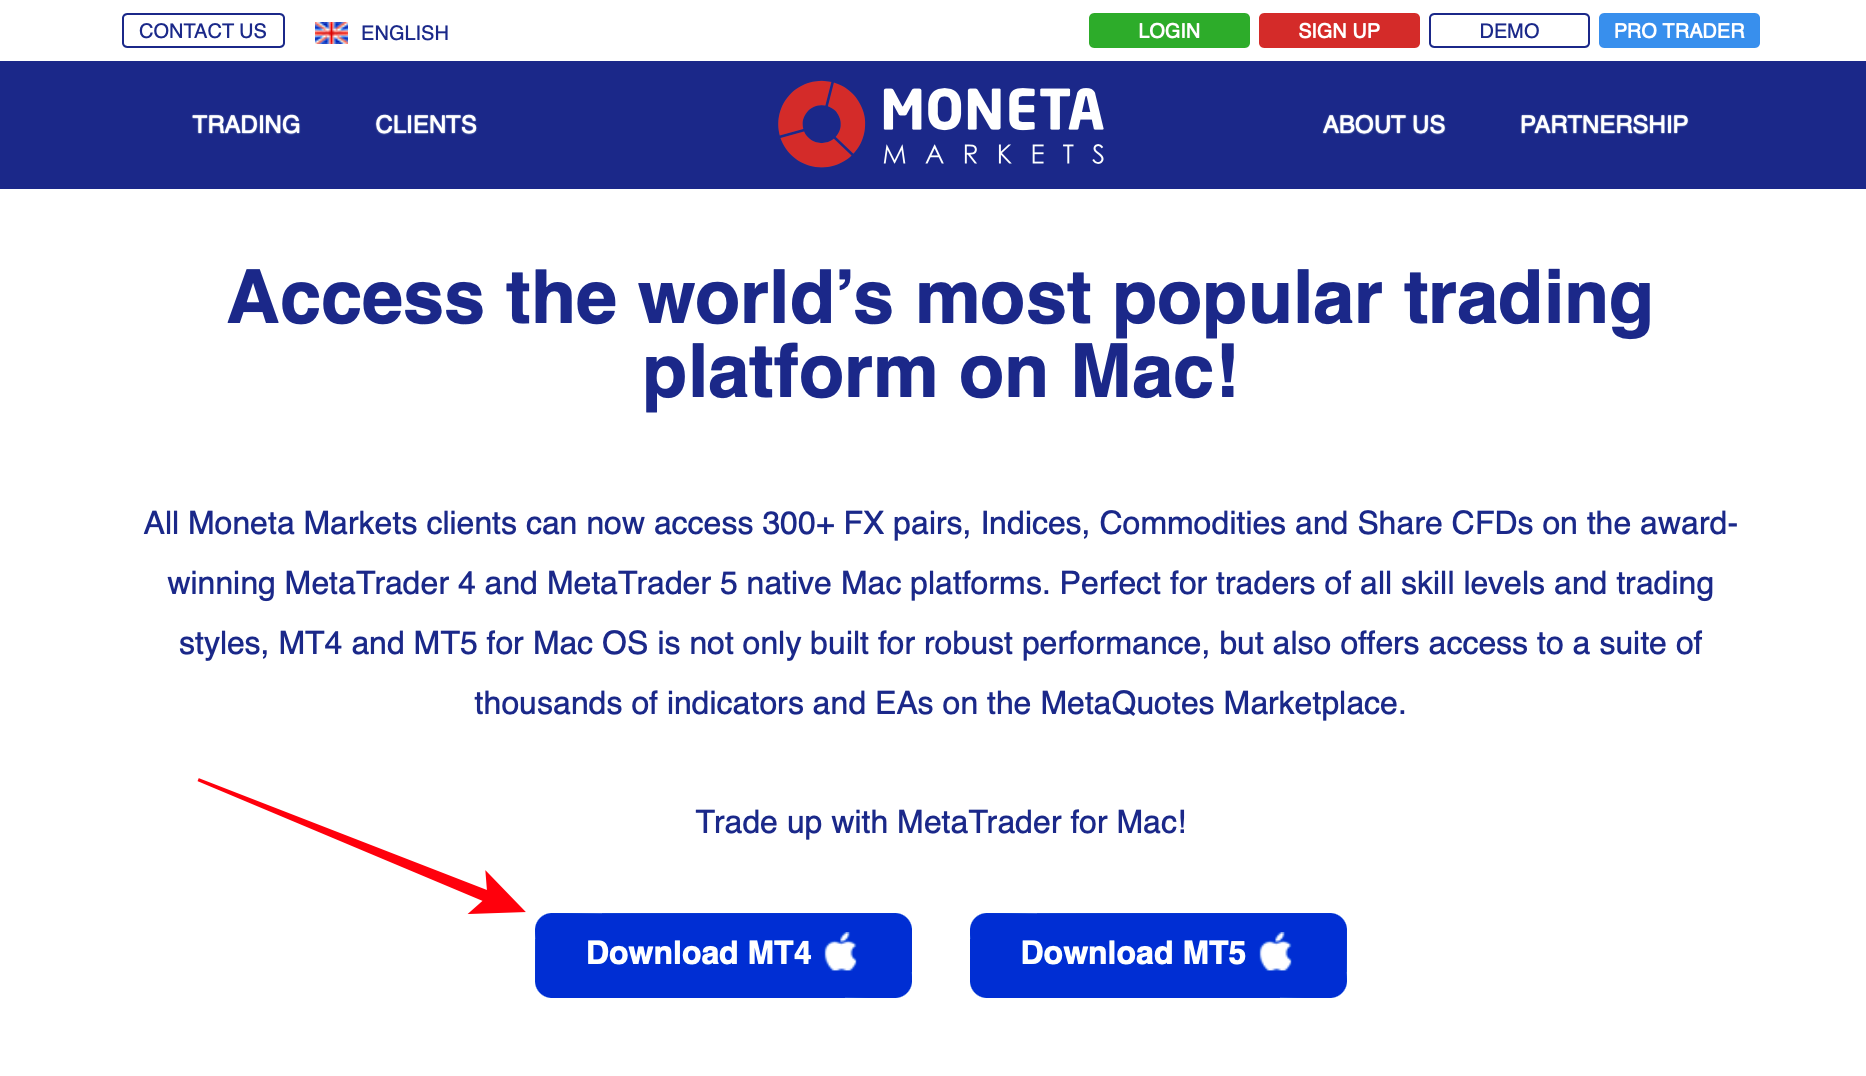 De MetaTrader 4 gebruiken op de Moneta Markets